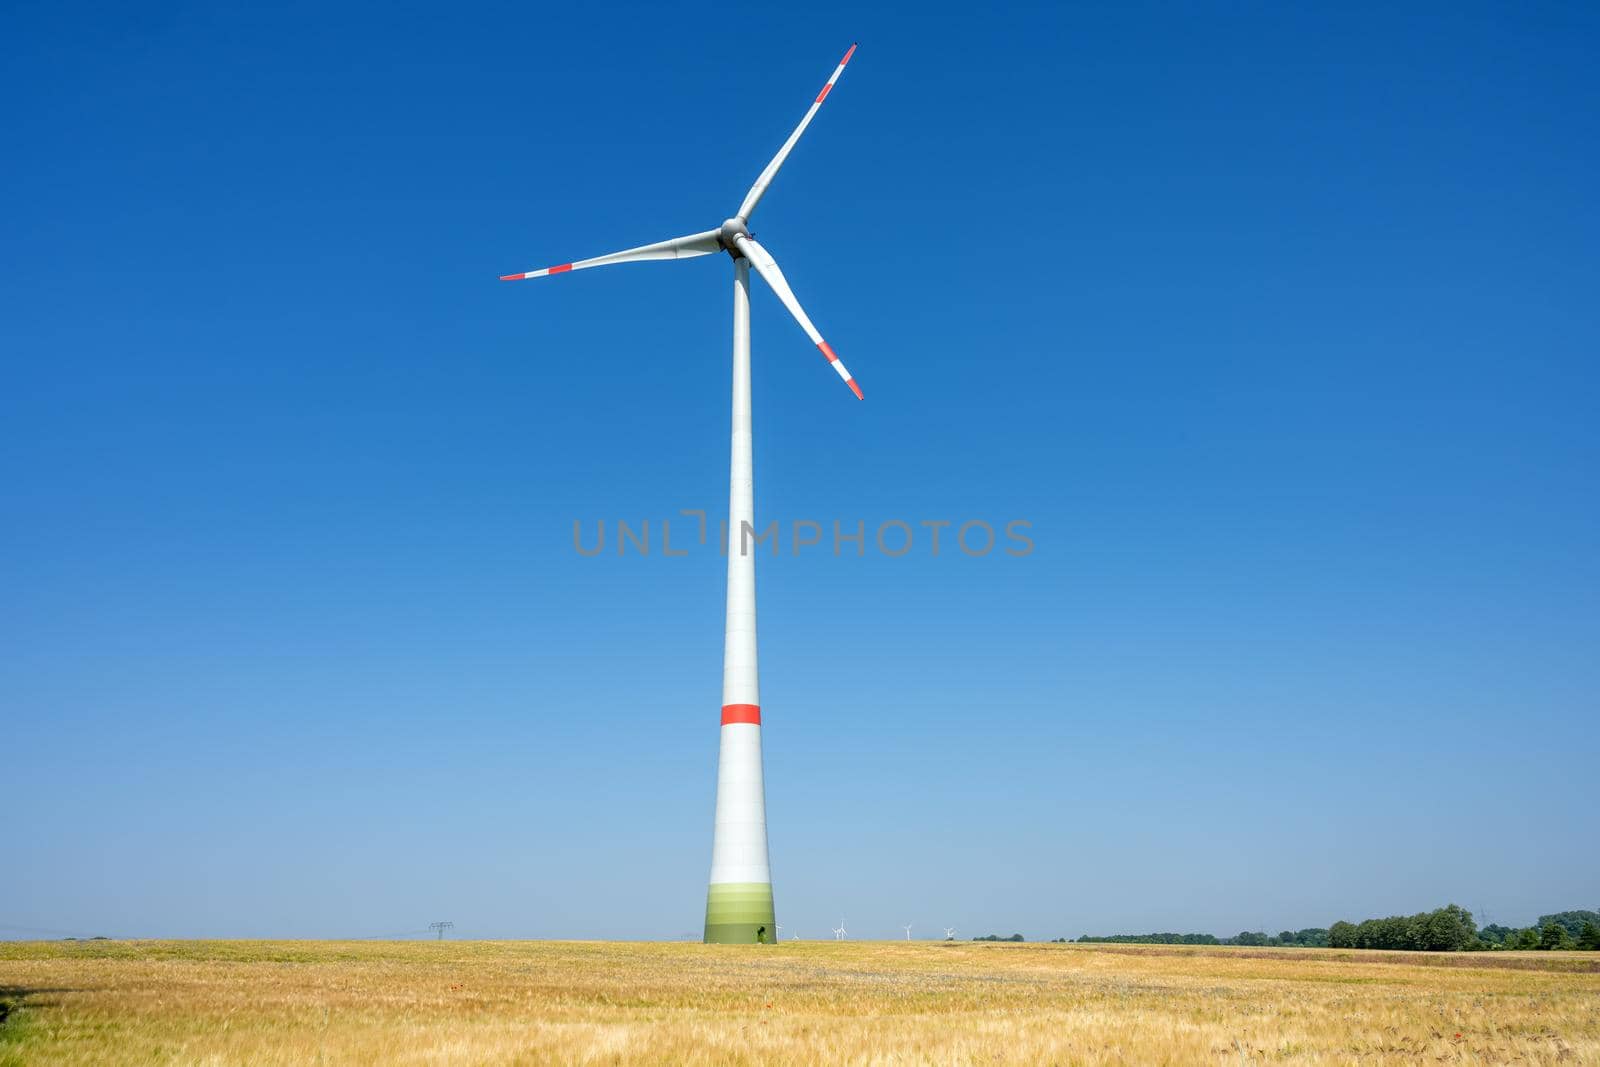 Modern wind turbine in a grain field seen in Germany